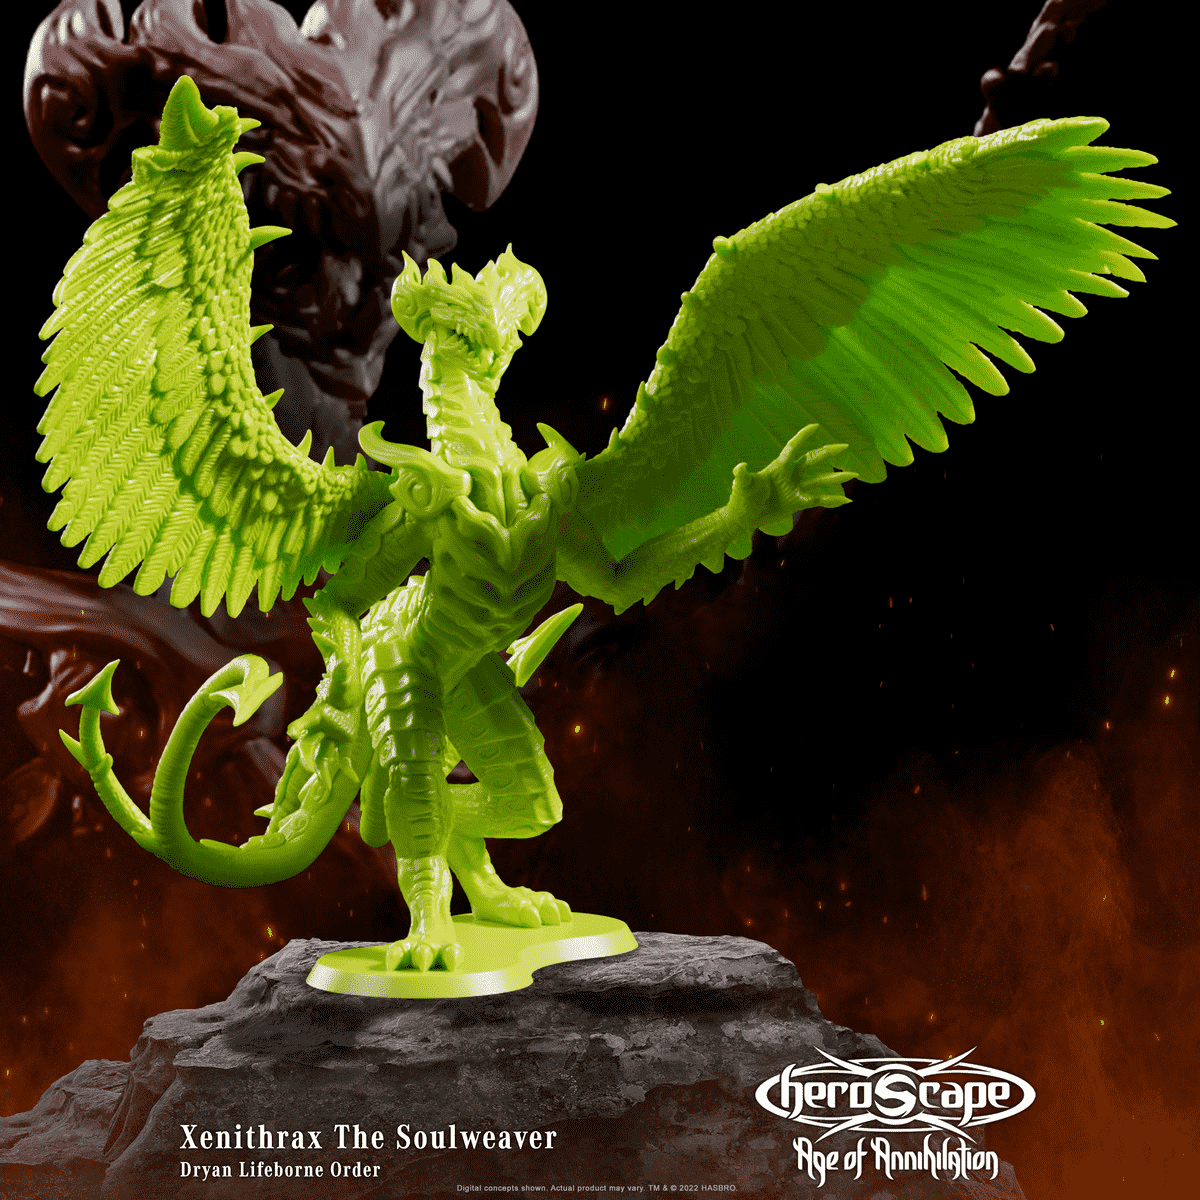 Xenithrax The Soulweaver est un dragon blindé géant debout sur deux jambes, ses ailes déployées.